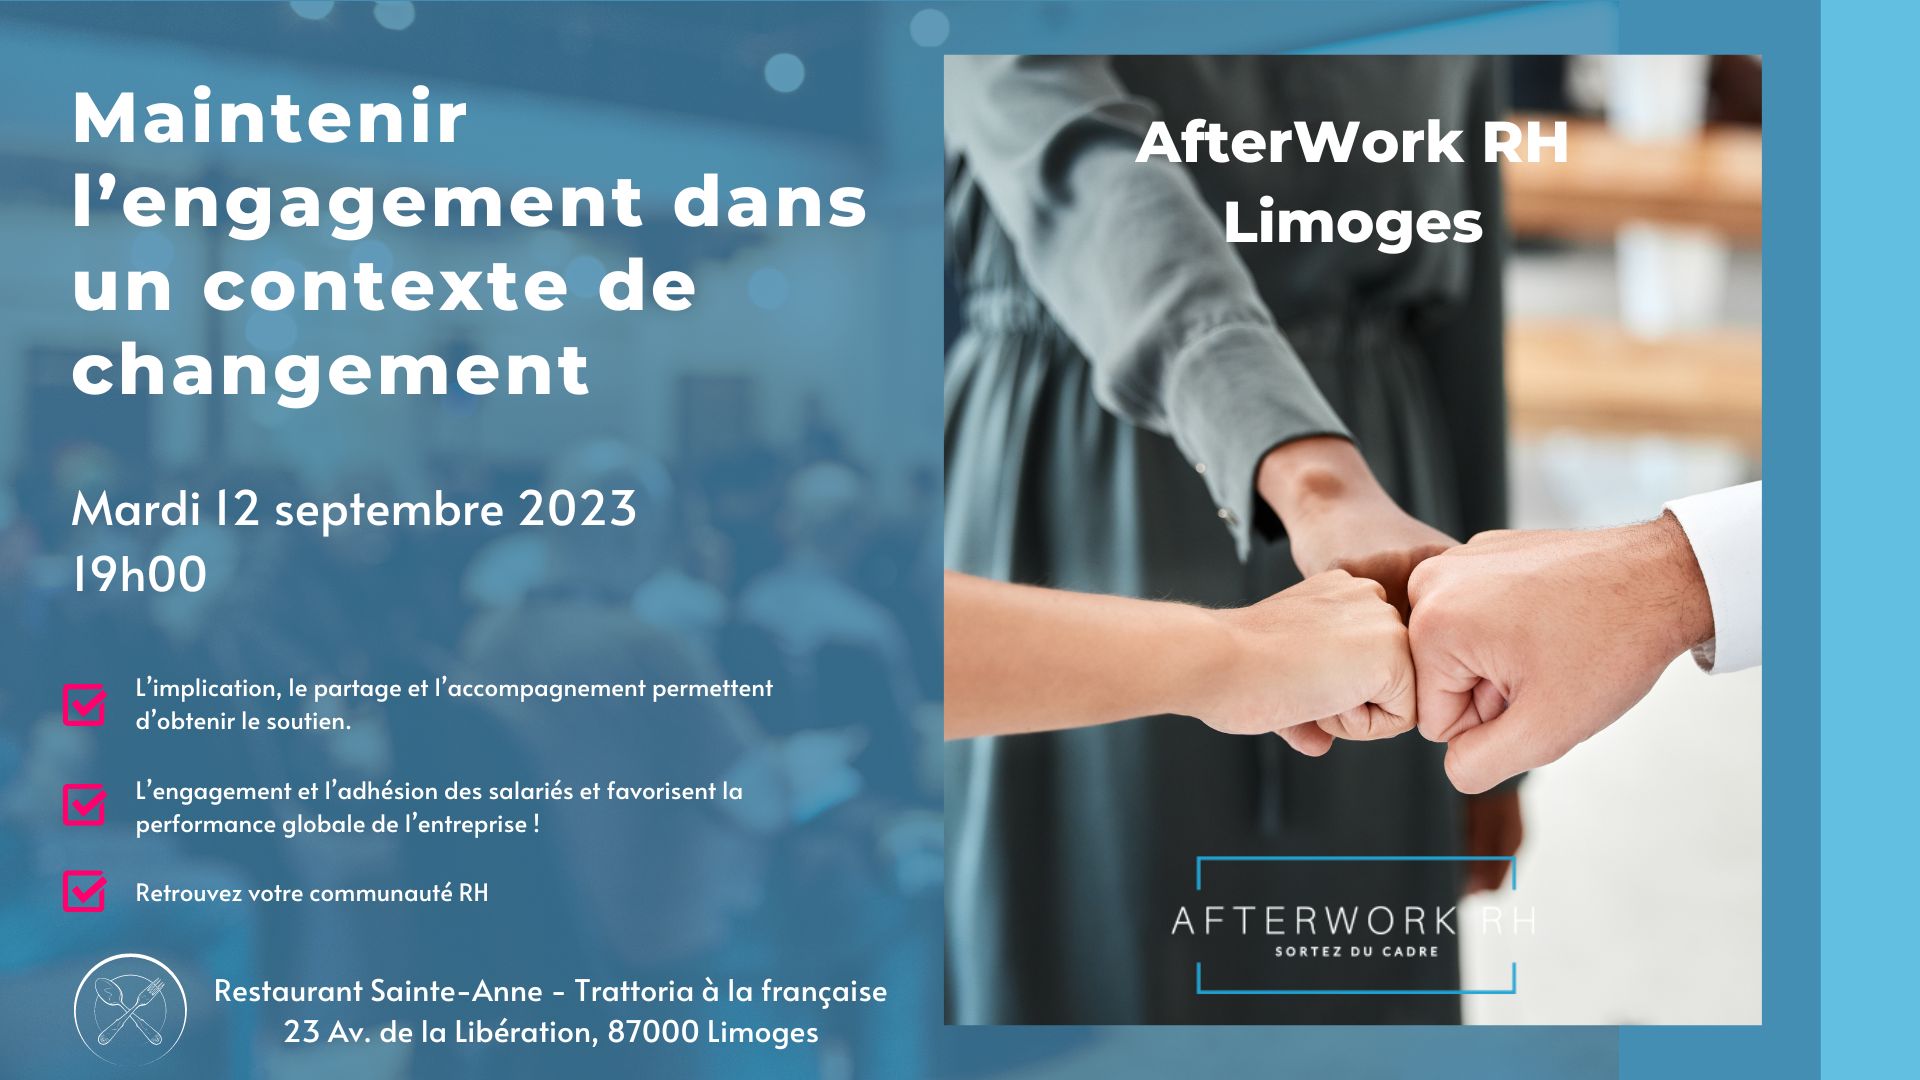 AfterWork RH Limoges – Maintenir l’engagement dans un contexte de changement